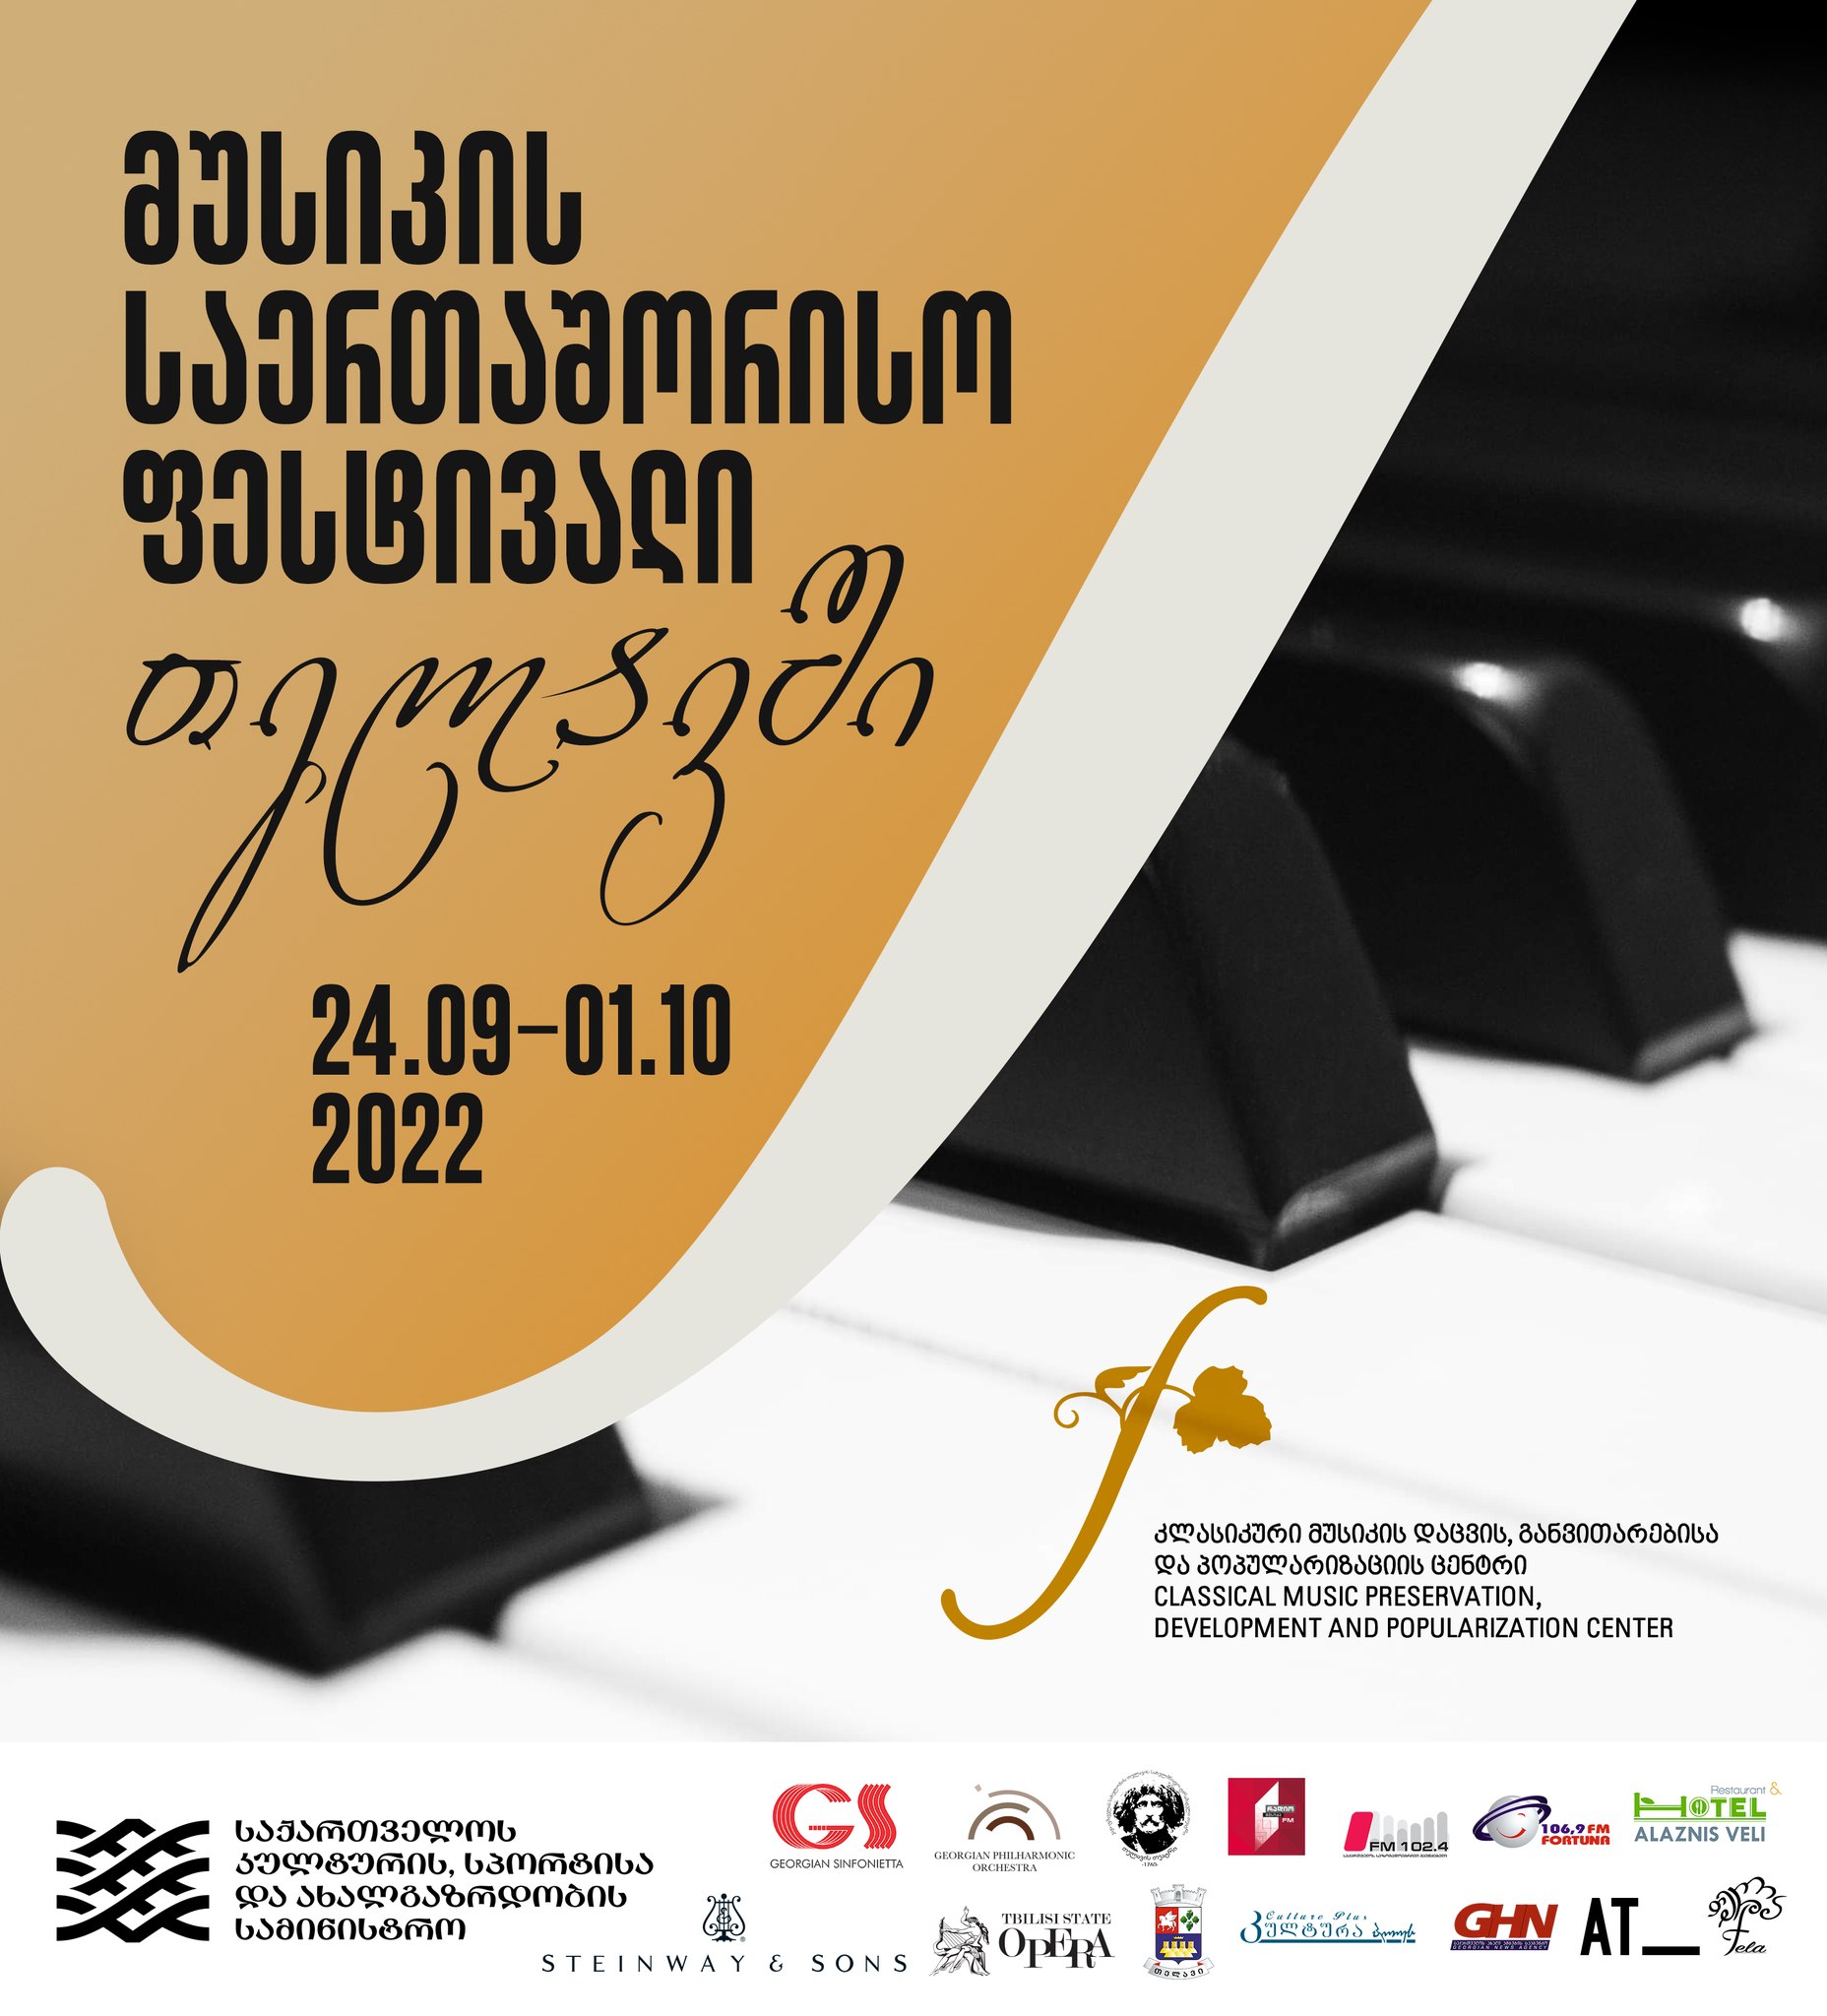 მუსიკის საერთაშორისო ფესტივალი თელავში წელს 24 სექტემბრიდან 1-ელ ოქტომბრამდე გაიმართება